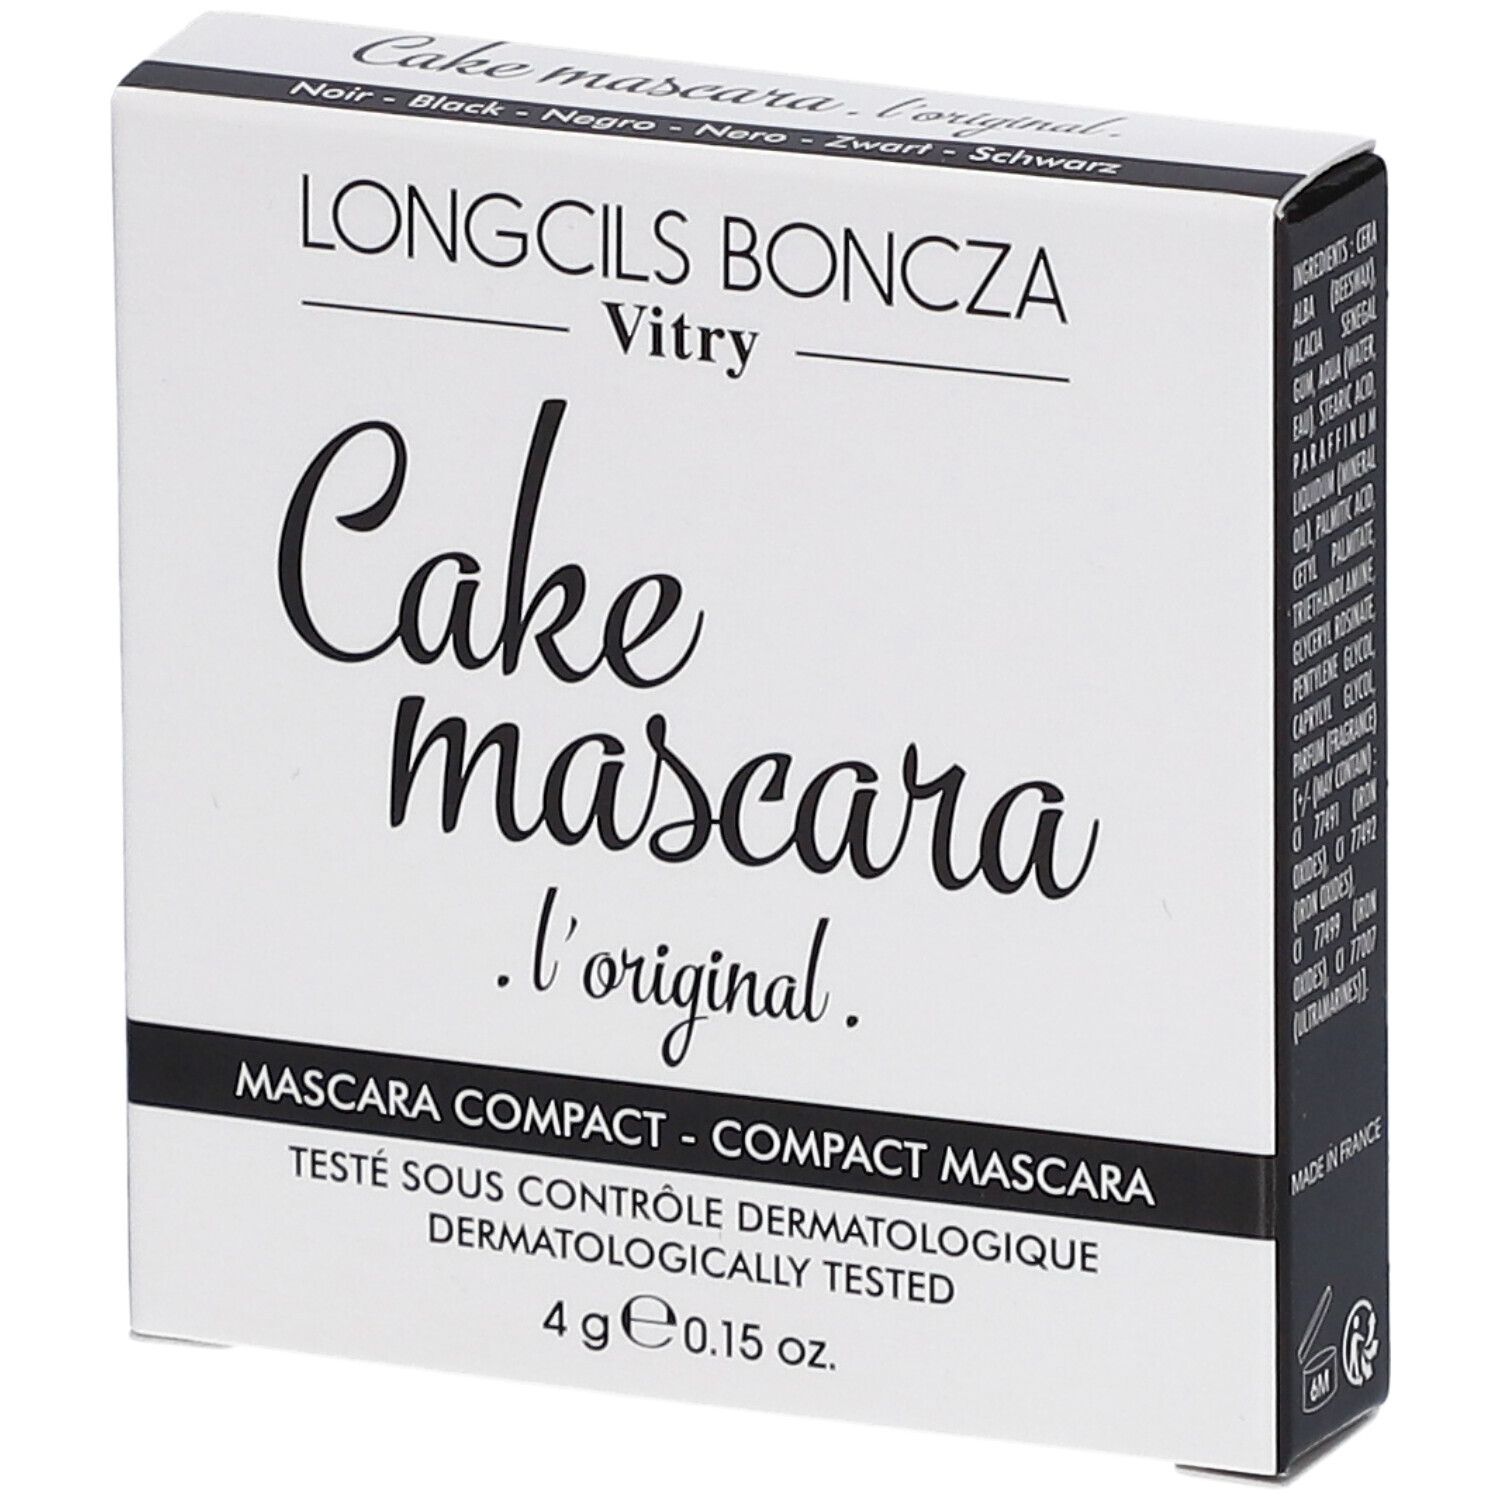 Image of Vitry Cake Mascara Original Schwarz